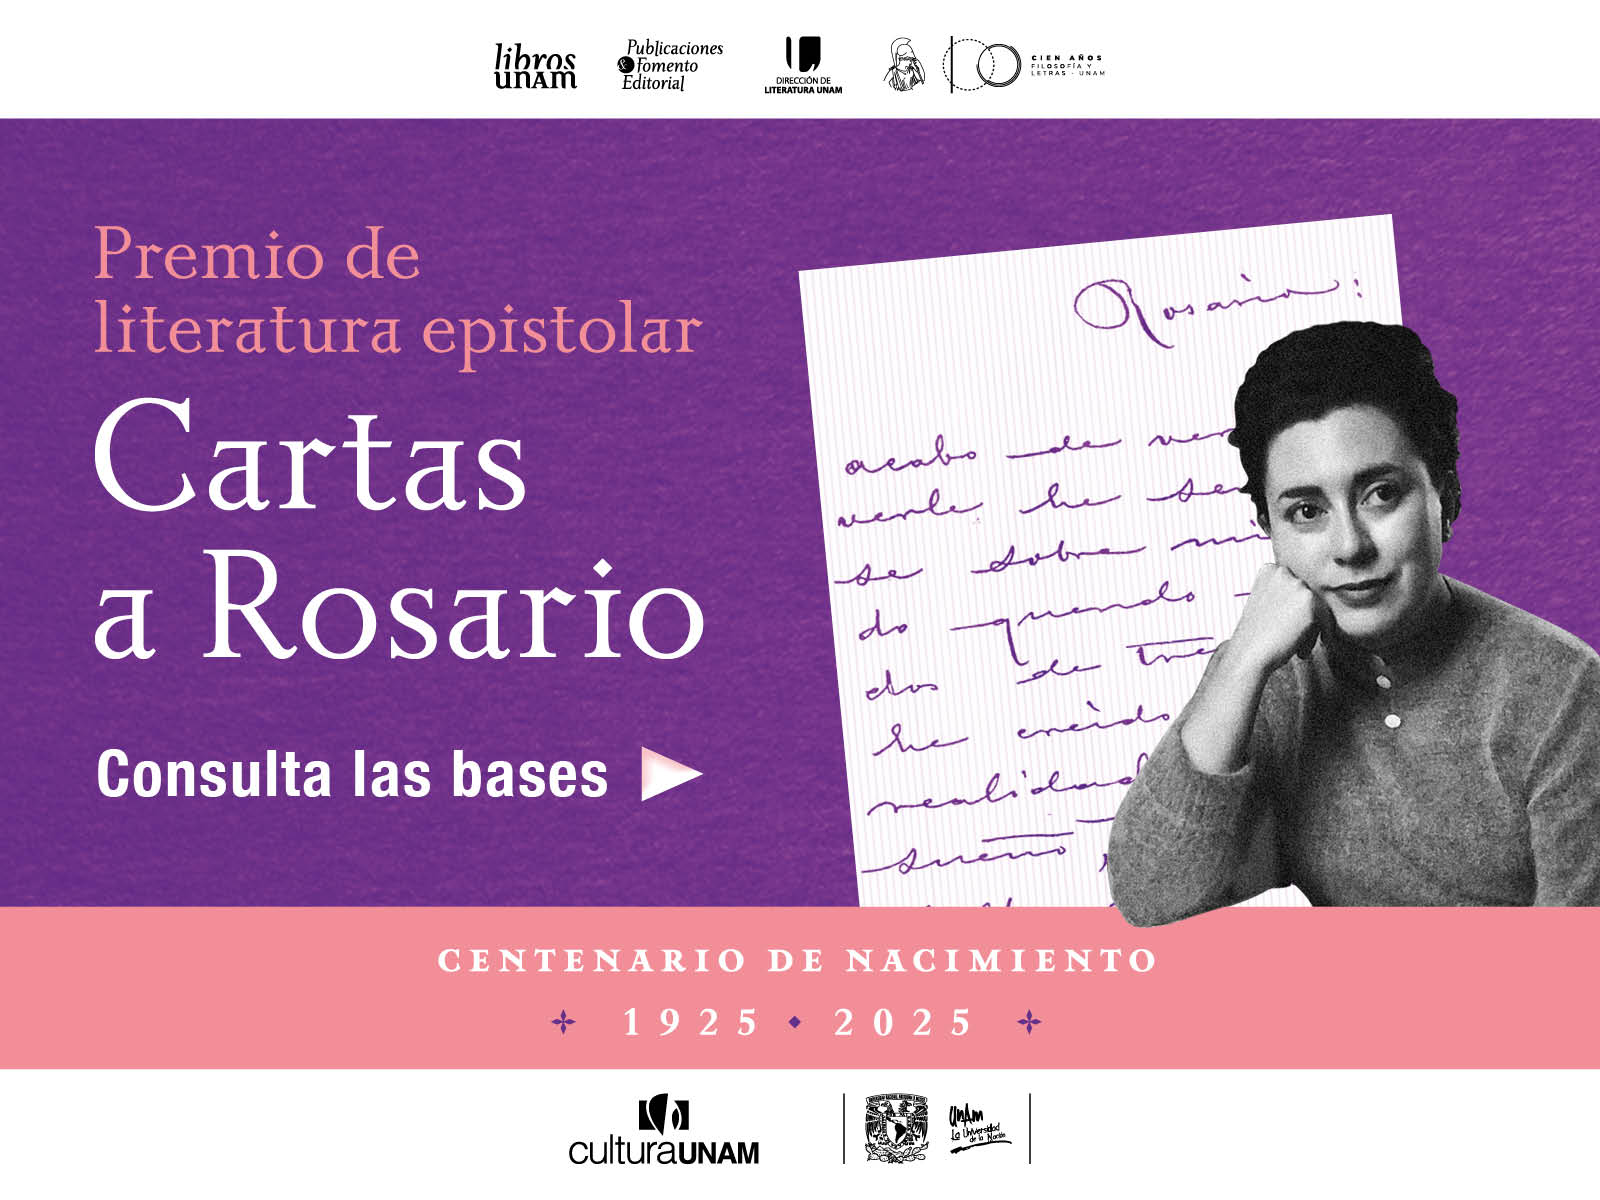 Literatura epistolar, cartas a Rosario - Libros UNAM